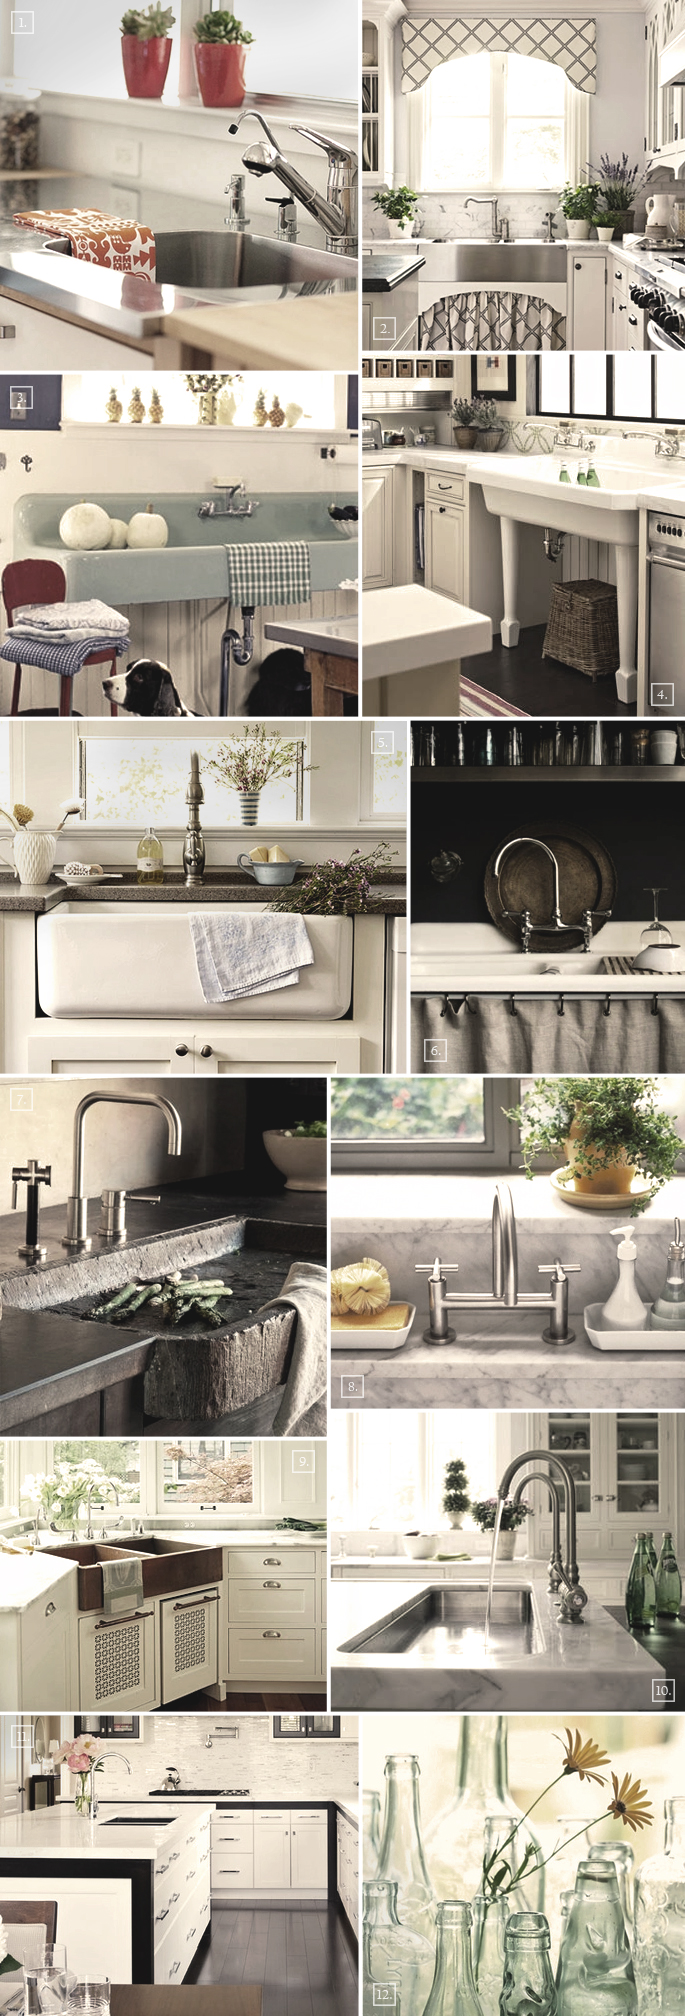 Design Styles Kitchen Sinks